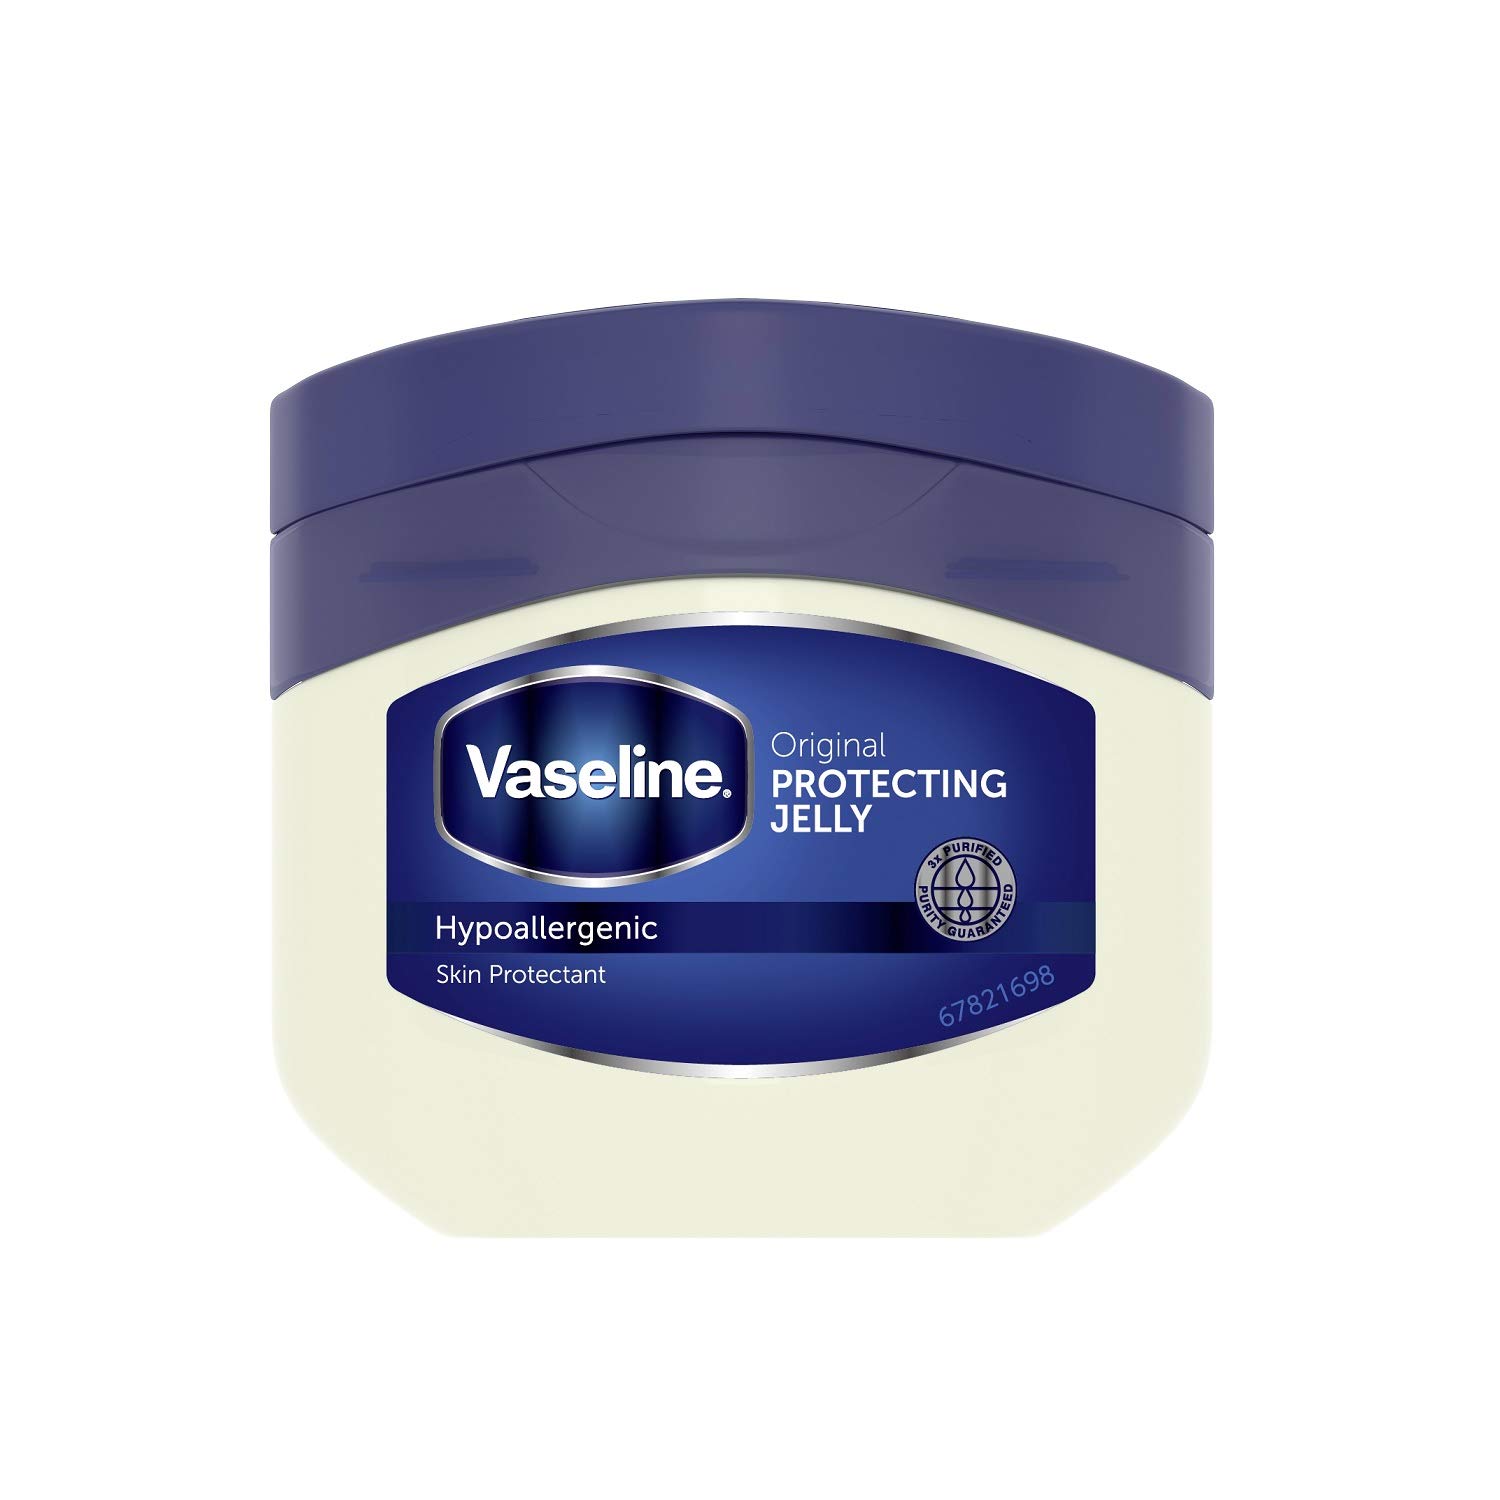 Vaseline ヴァセリン オリジナル ピュアスキンジェリー 80g ×1個 スキンケアクリームの商品画像